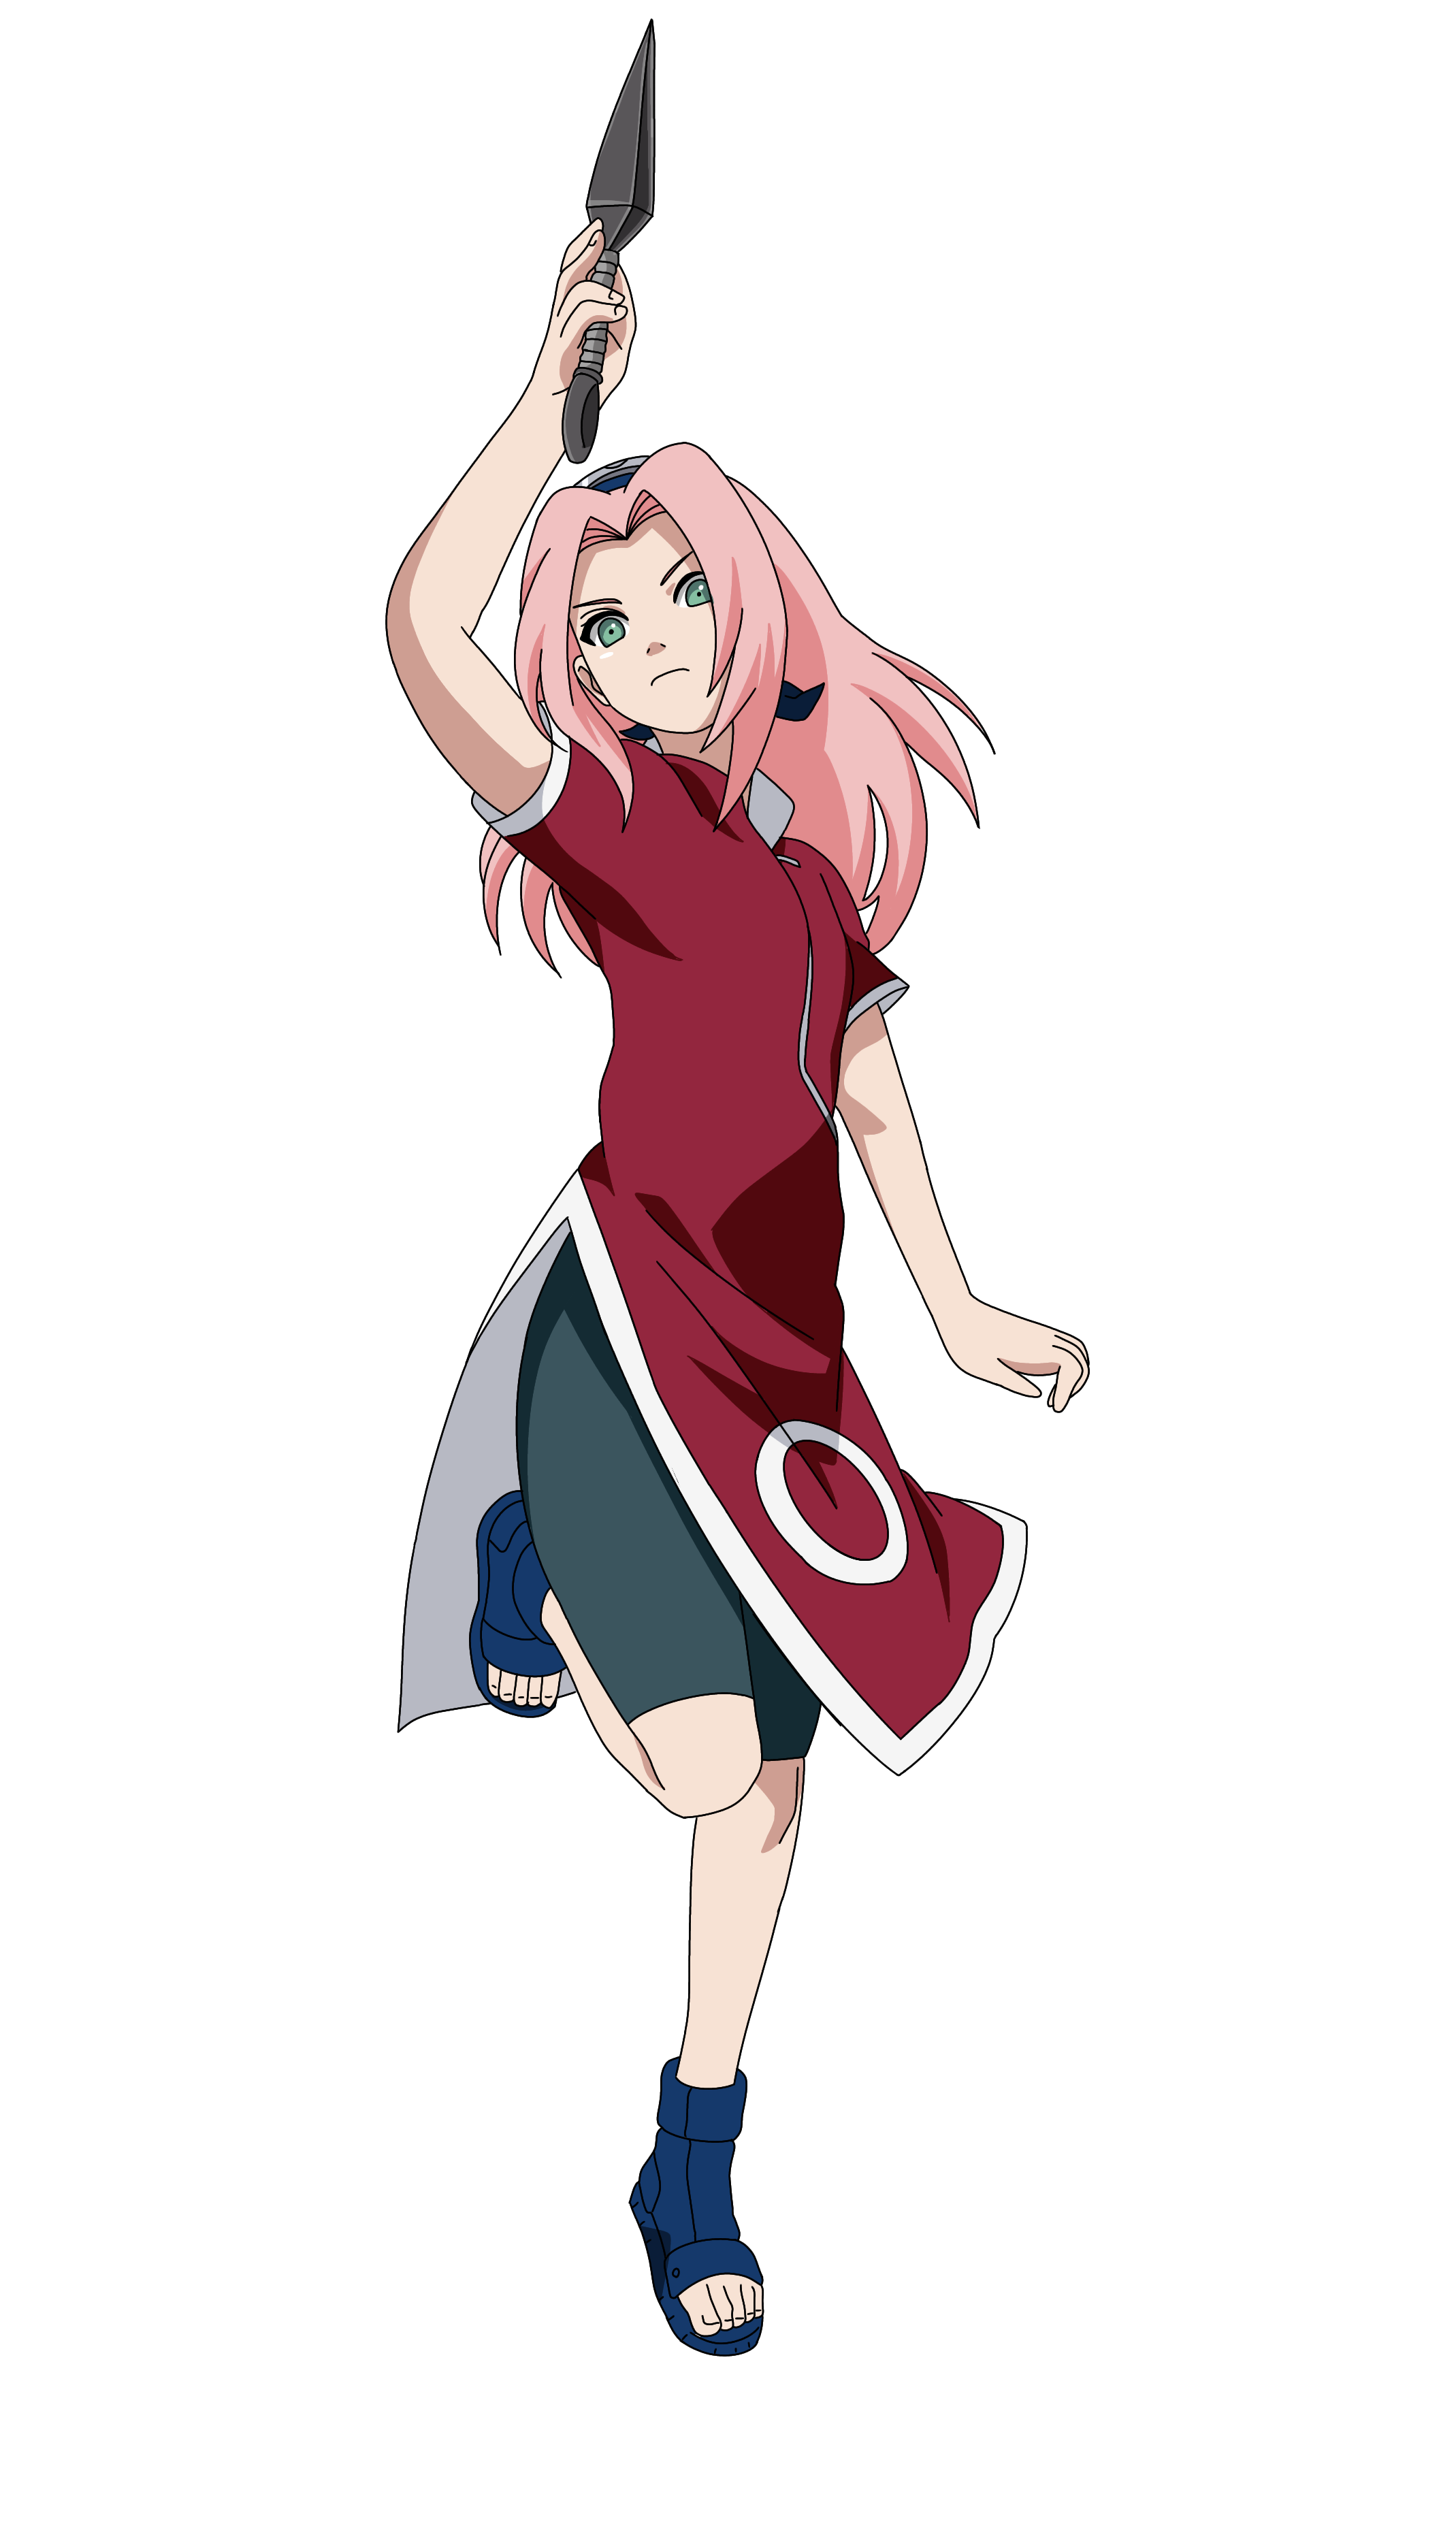 Sakura Haruno - Naruto by Shinoharaa on DeviantArt